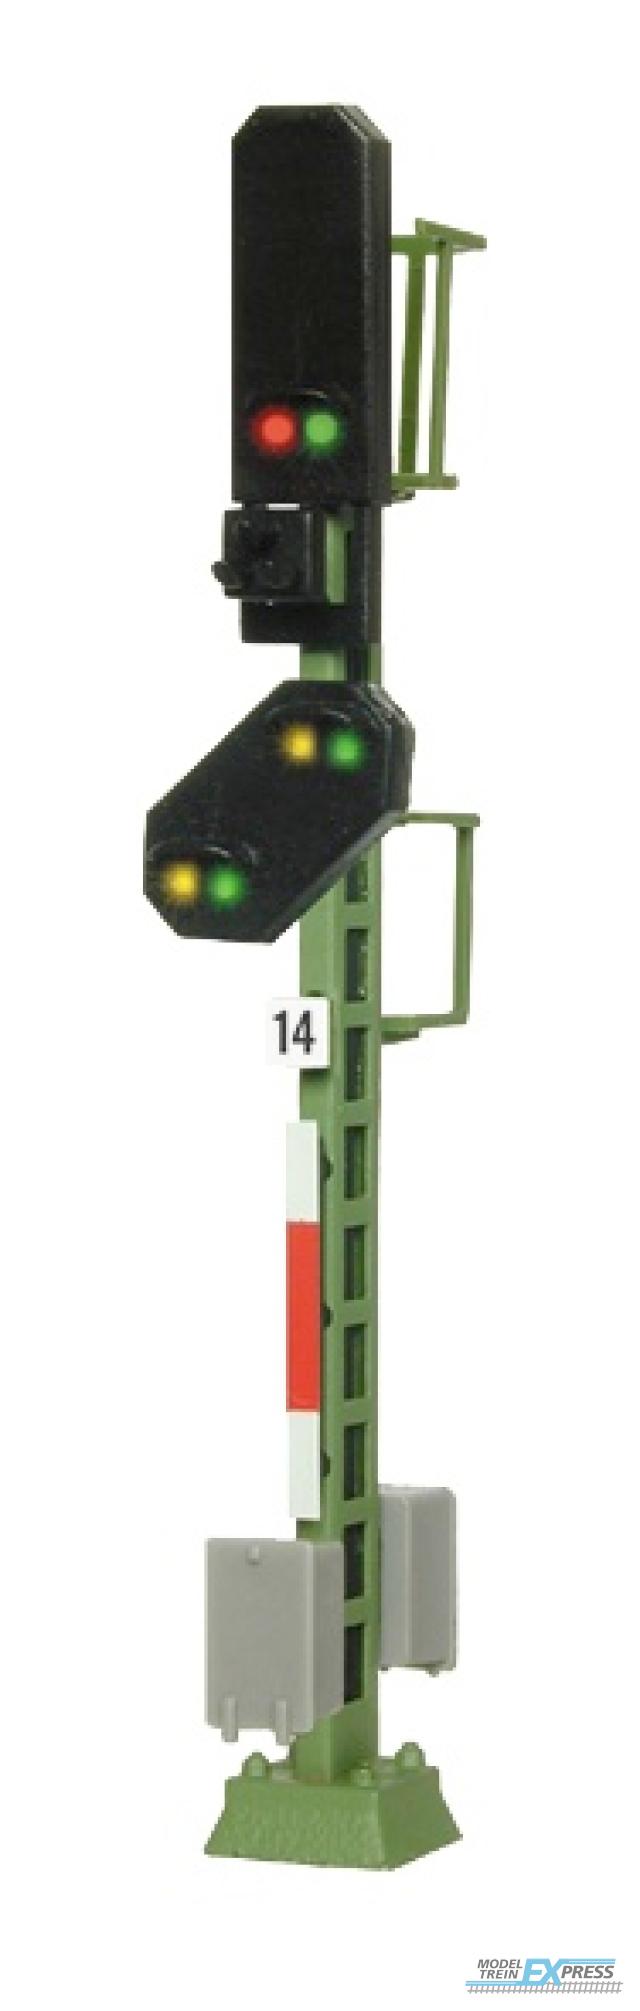 Viessmann 4414 N Licht-Blocksignal mit Vorsignal